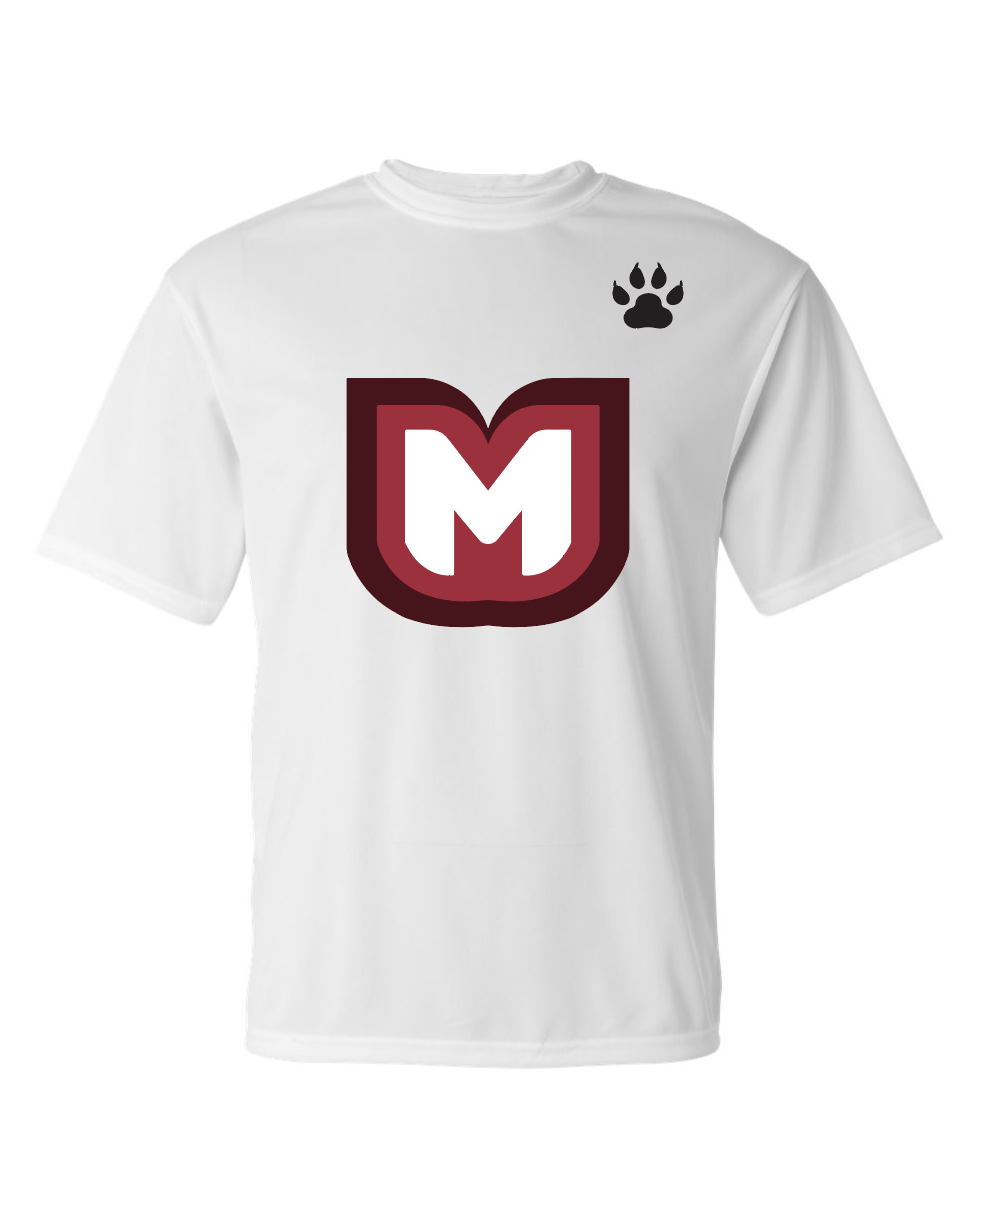 Mavericks Performance T-Shirt